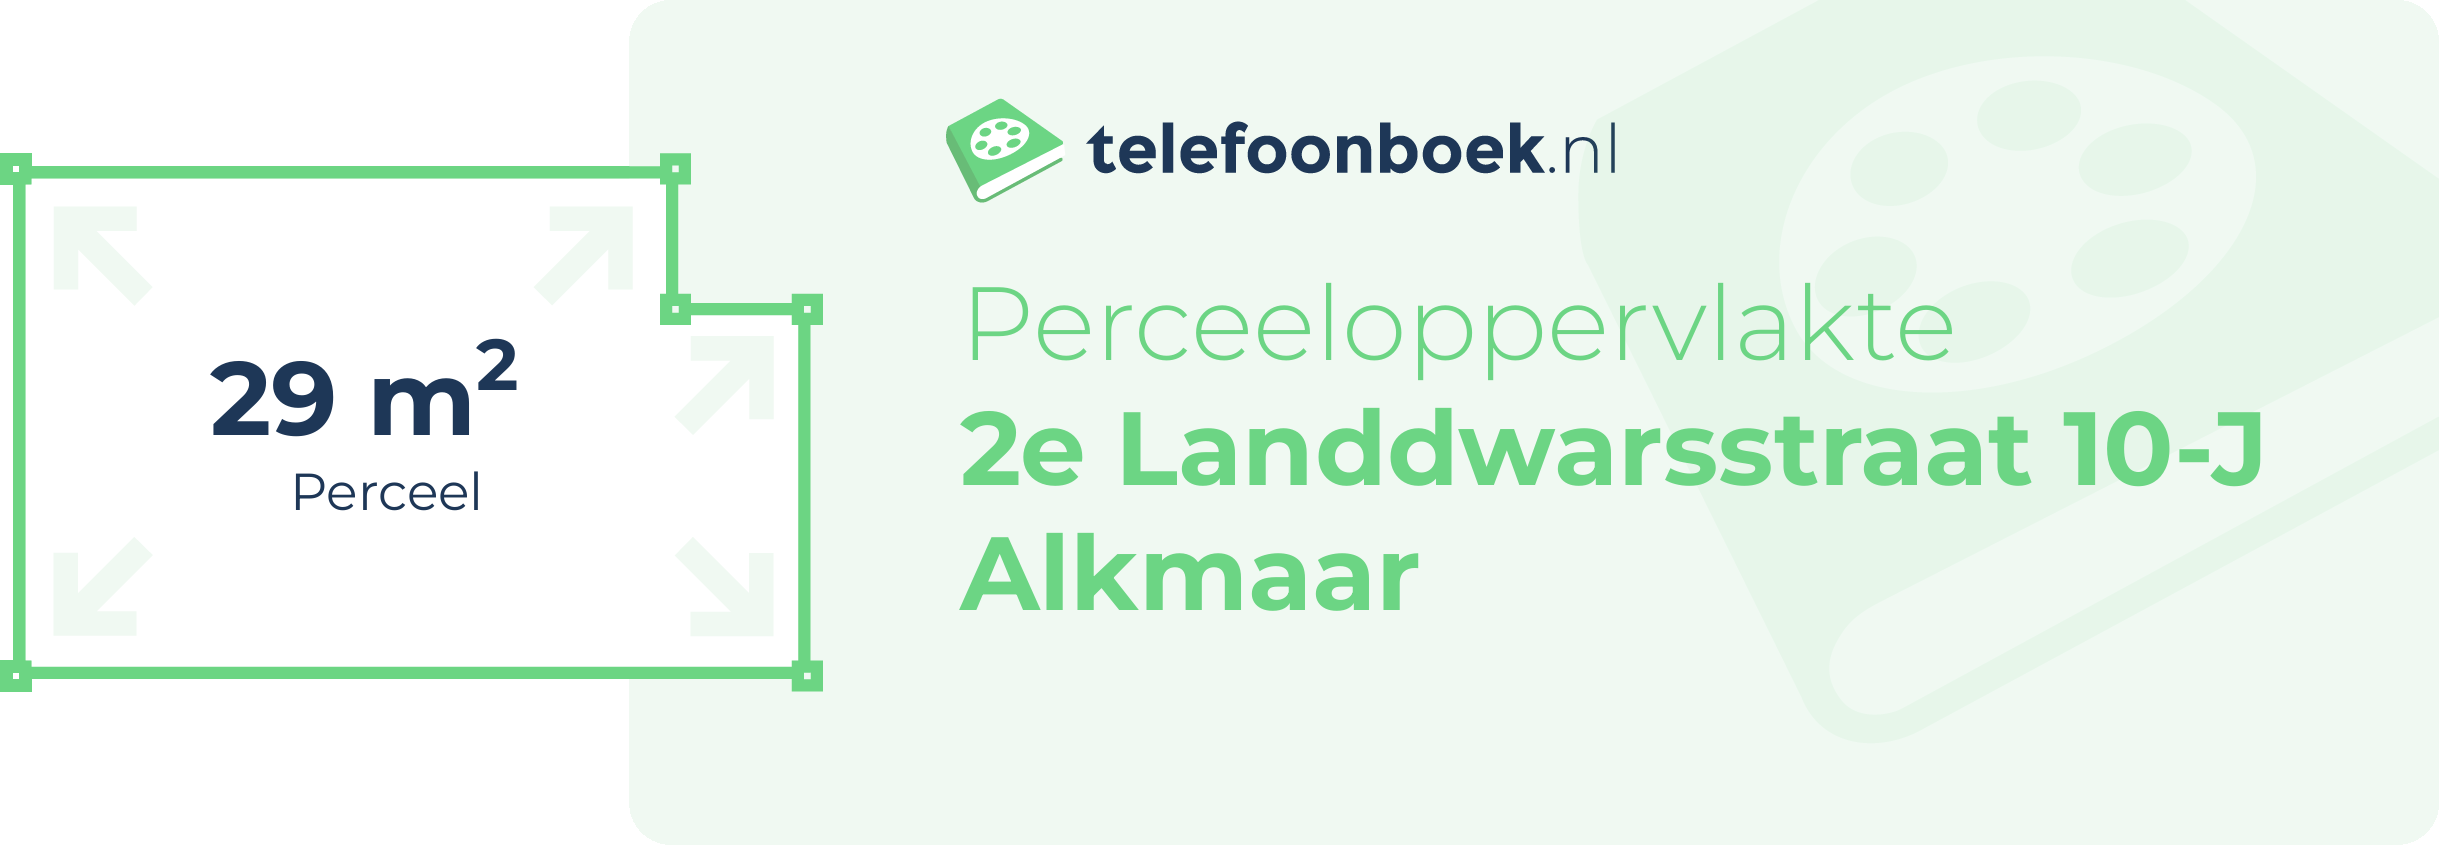 Perceeloppervlakte 2e Landdwarsstraat 10-J Alkmaar